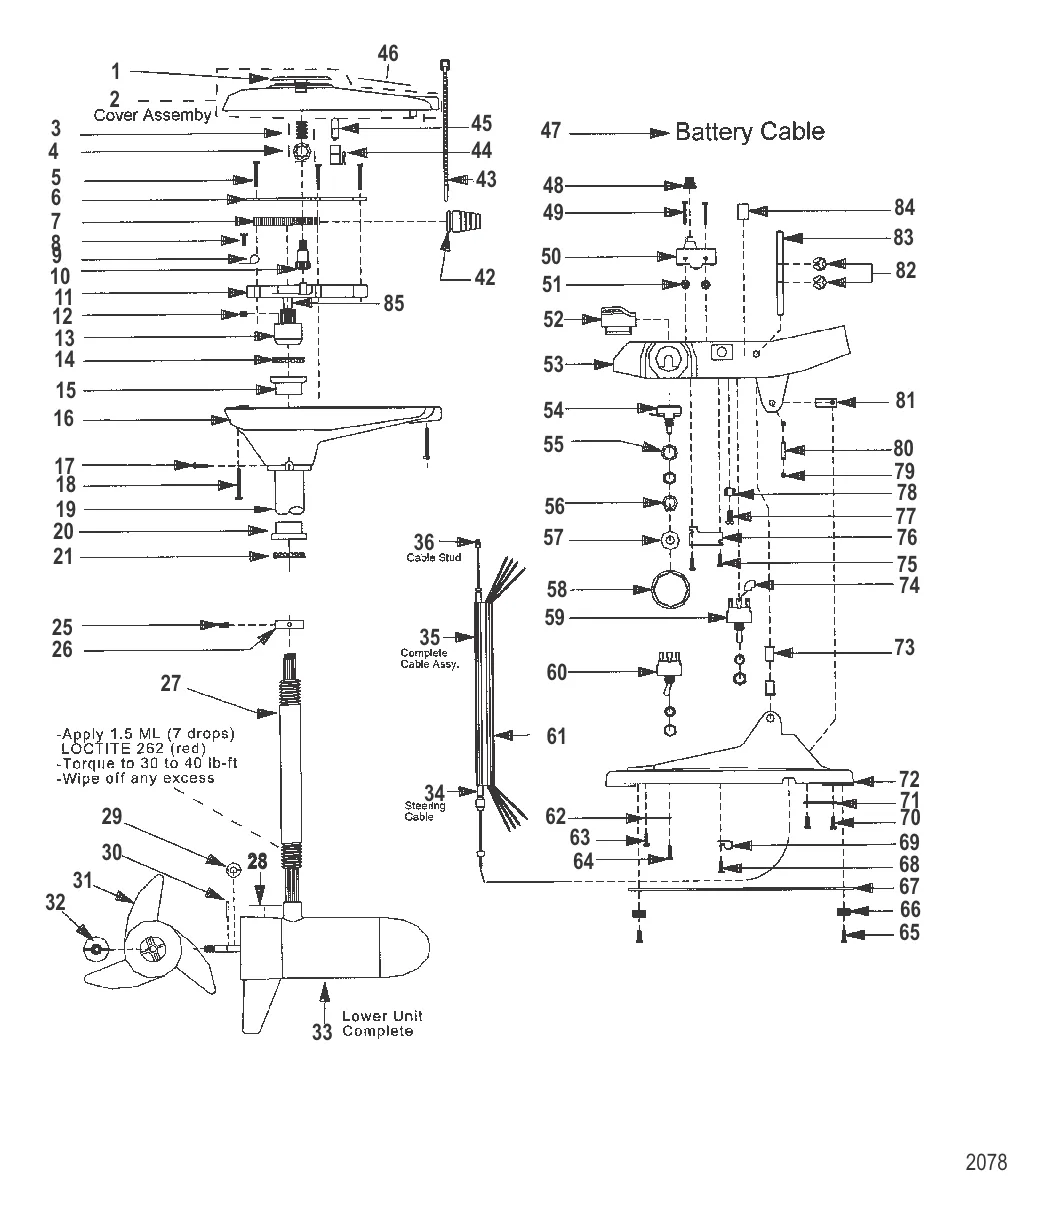 Двигатель для тралового лова в сборе (Модель 752) (12 В)